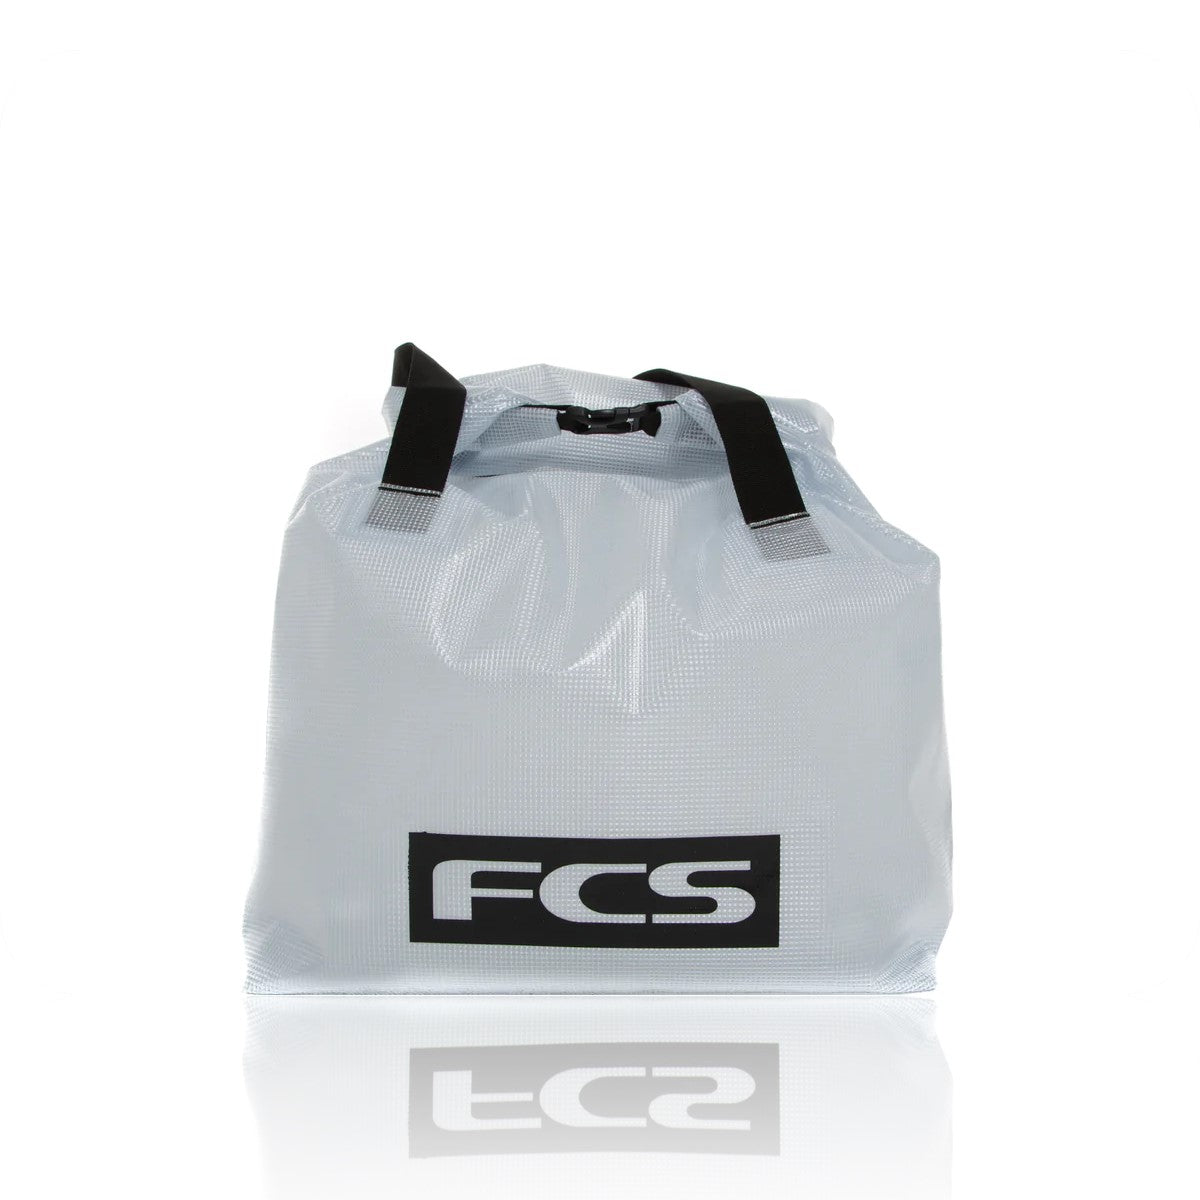 FCS Large Wet Bag